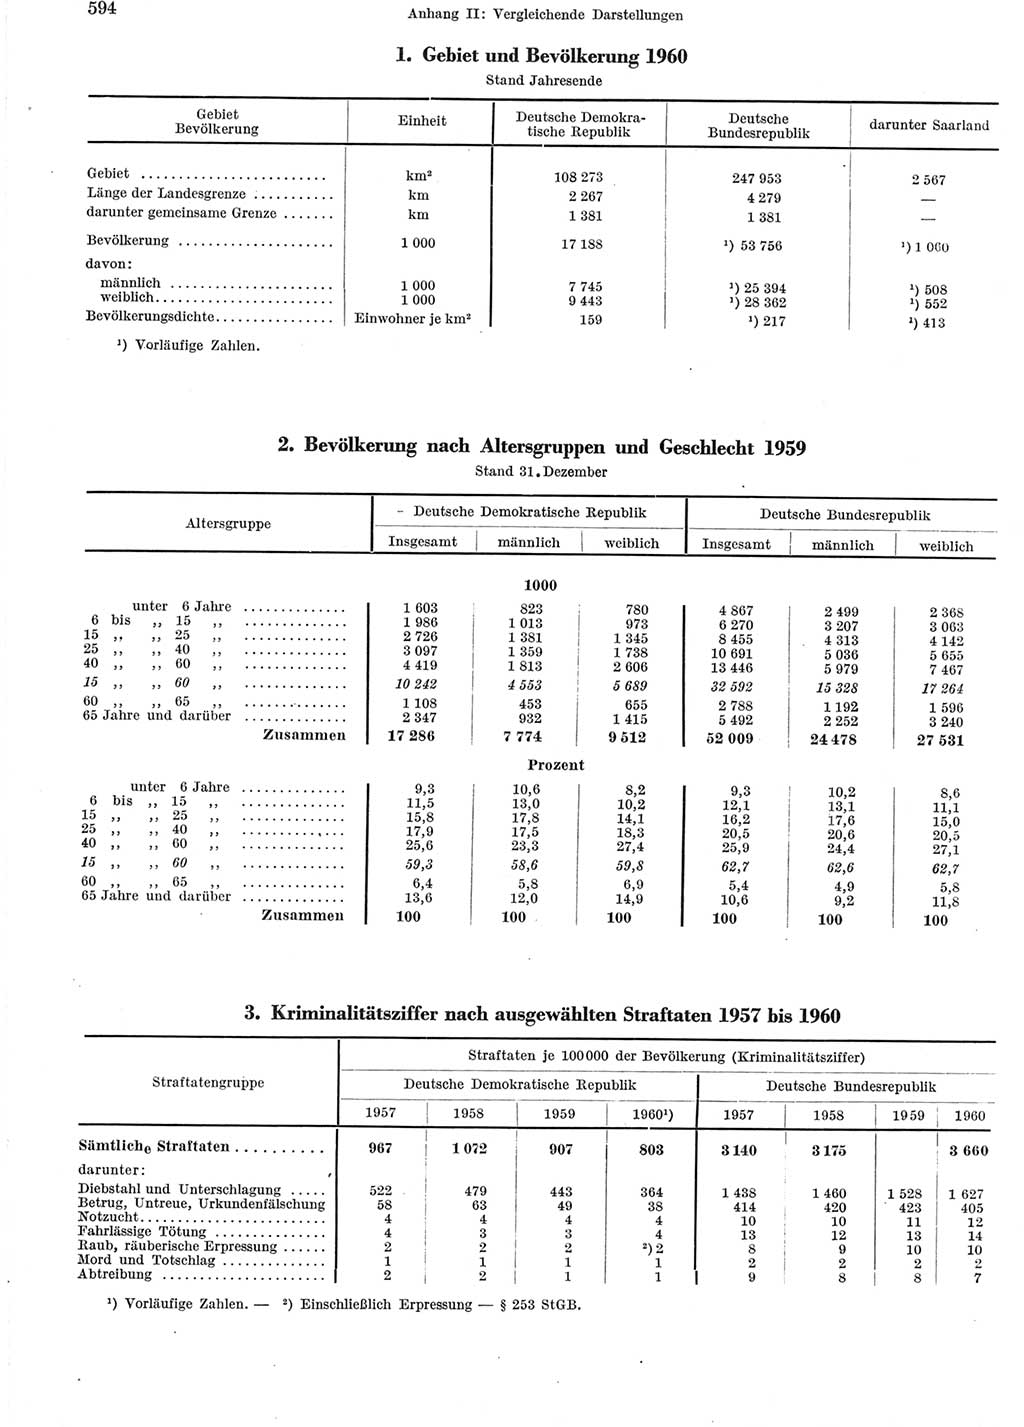 Statistisches Jahrbuch der Deutschen Demokratischen Republik (DDR) 1960-1961, Seite 594 (Stat. Jb. DDR 1960-1961, S. 594)